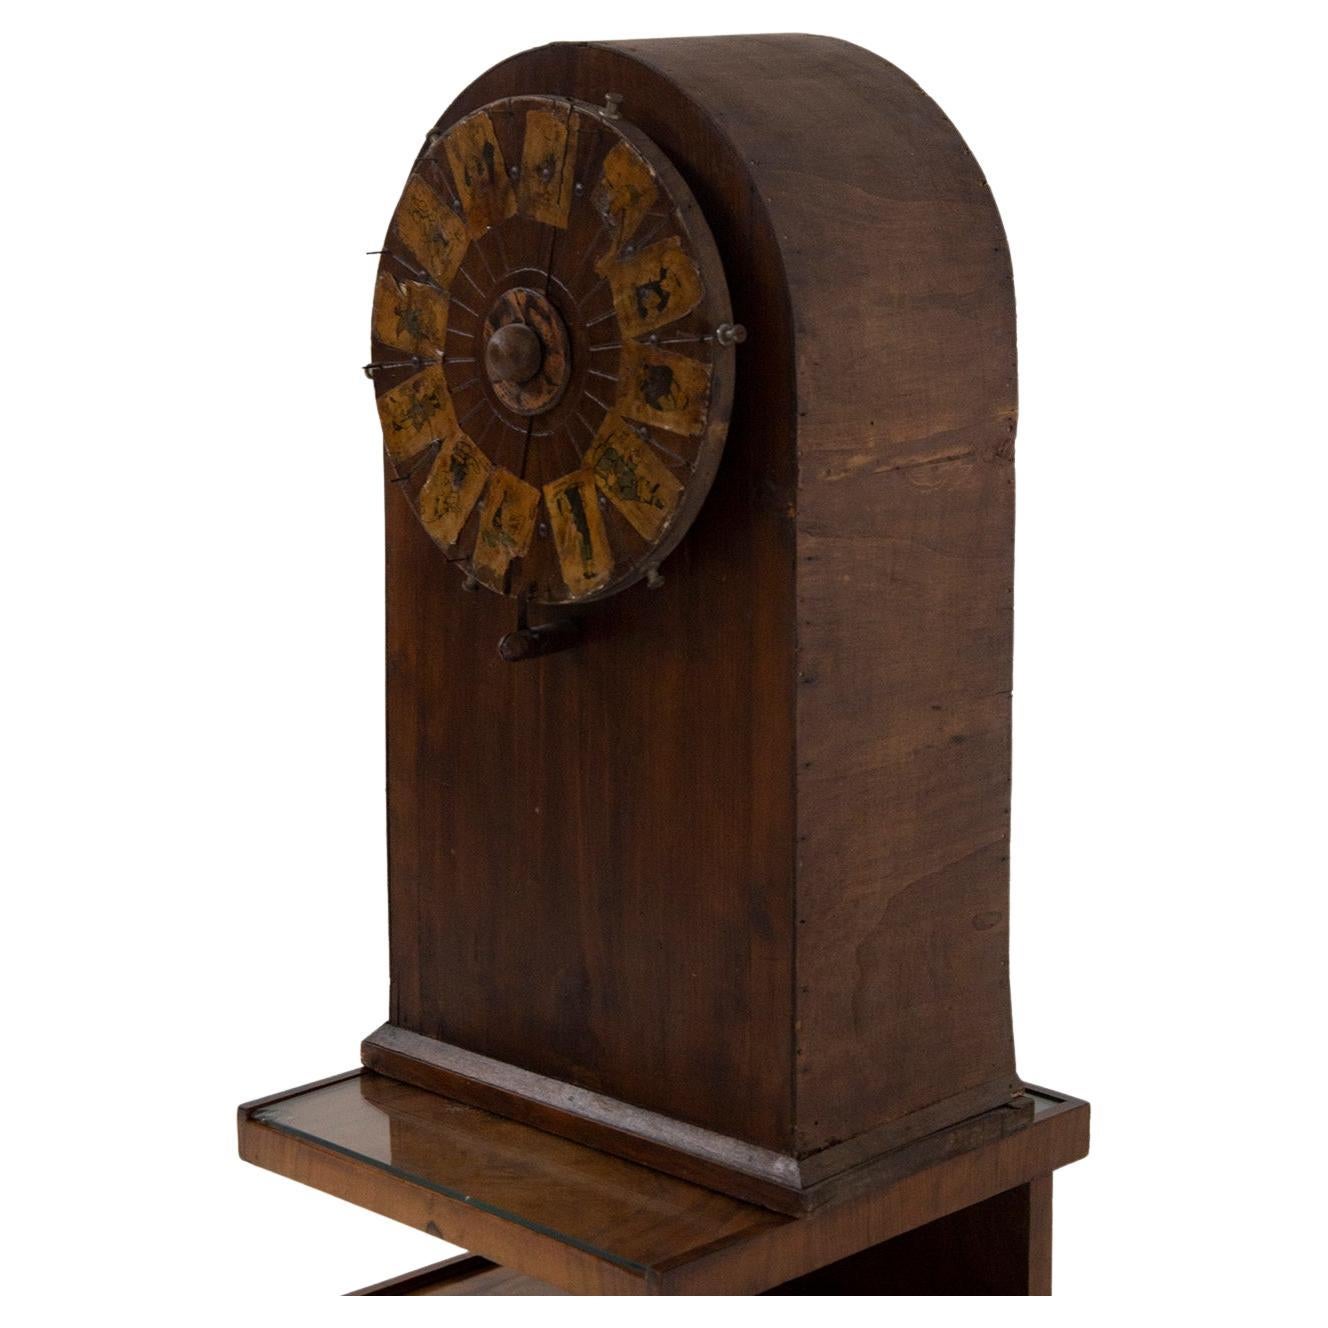 roue de jeu de roulette ancienne en bois avec figures appliquées